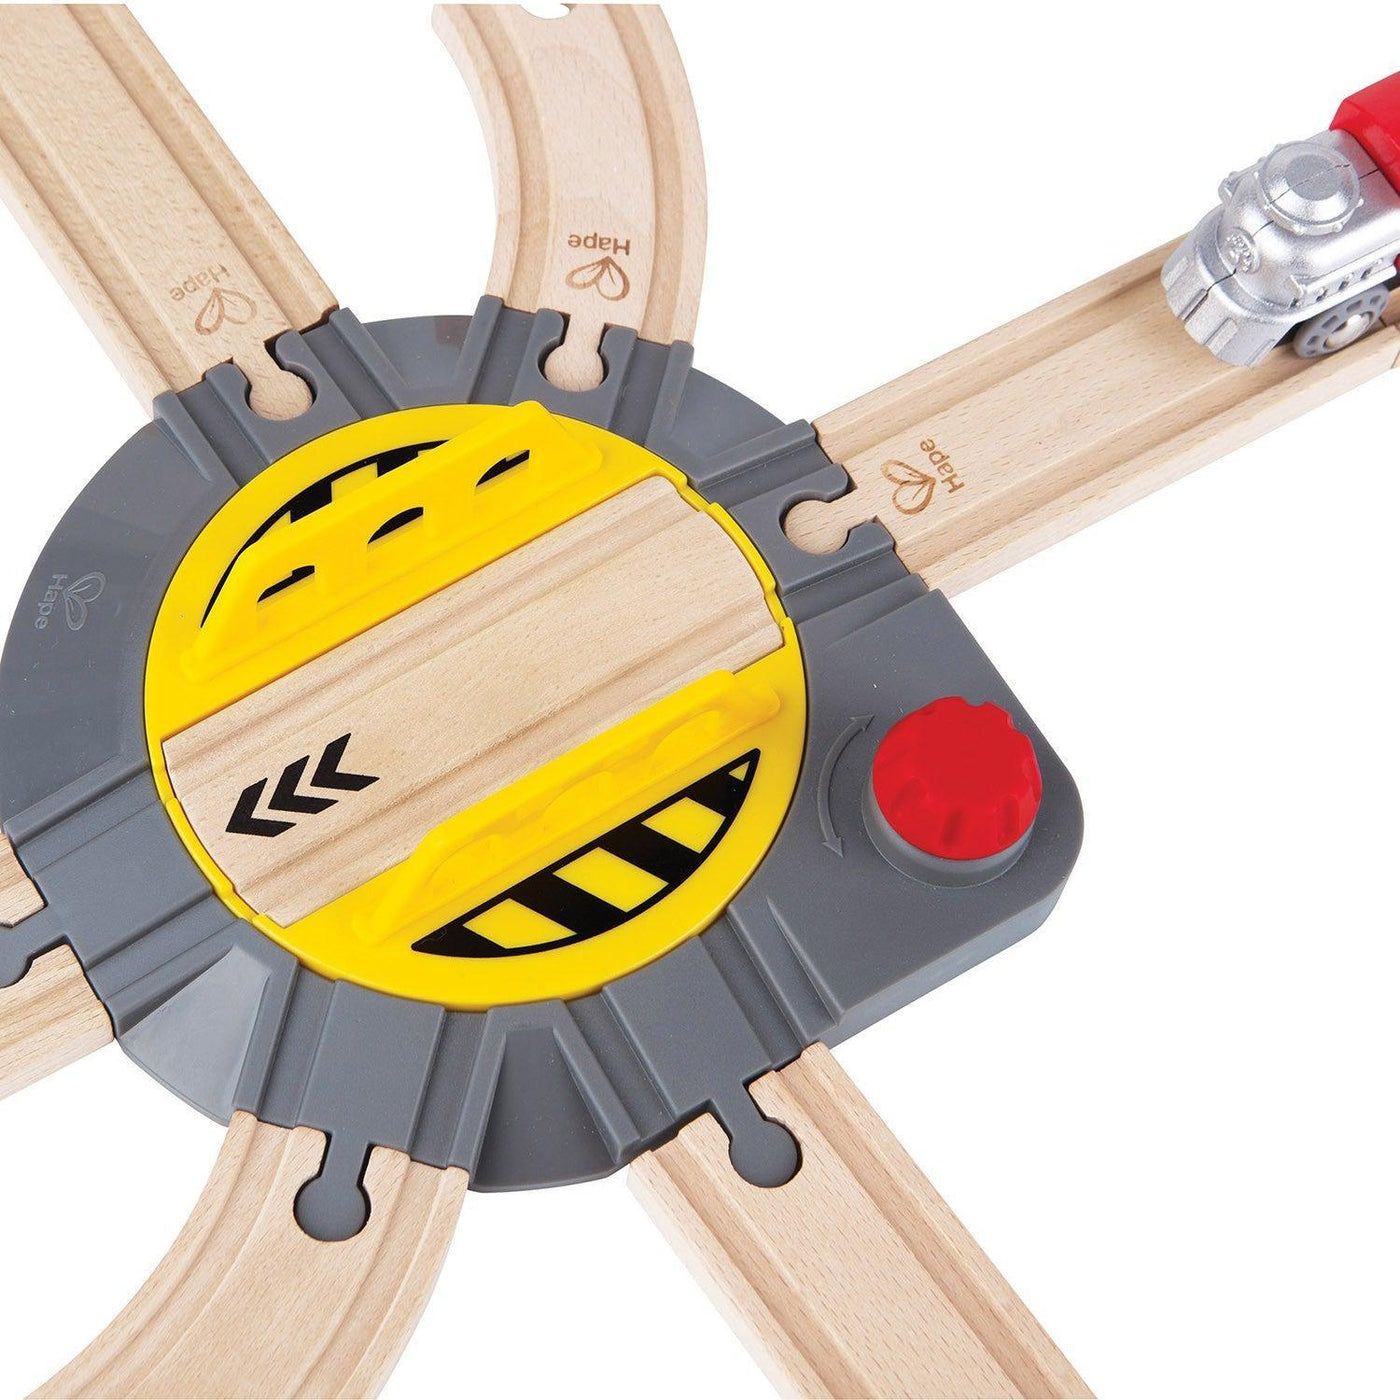 Hape Adjustable Rail Turntable